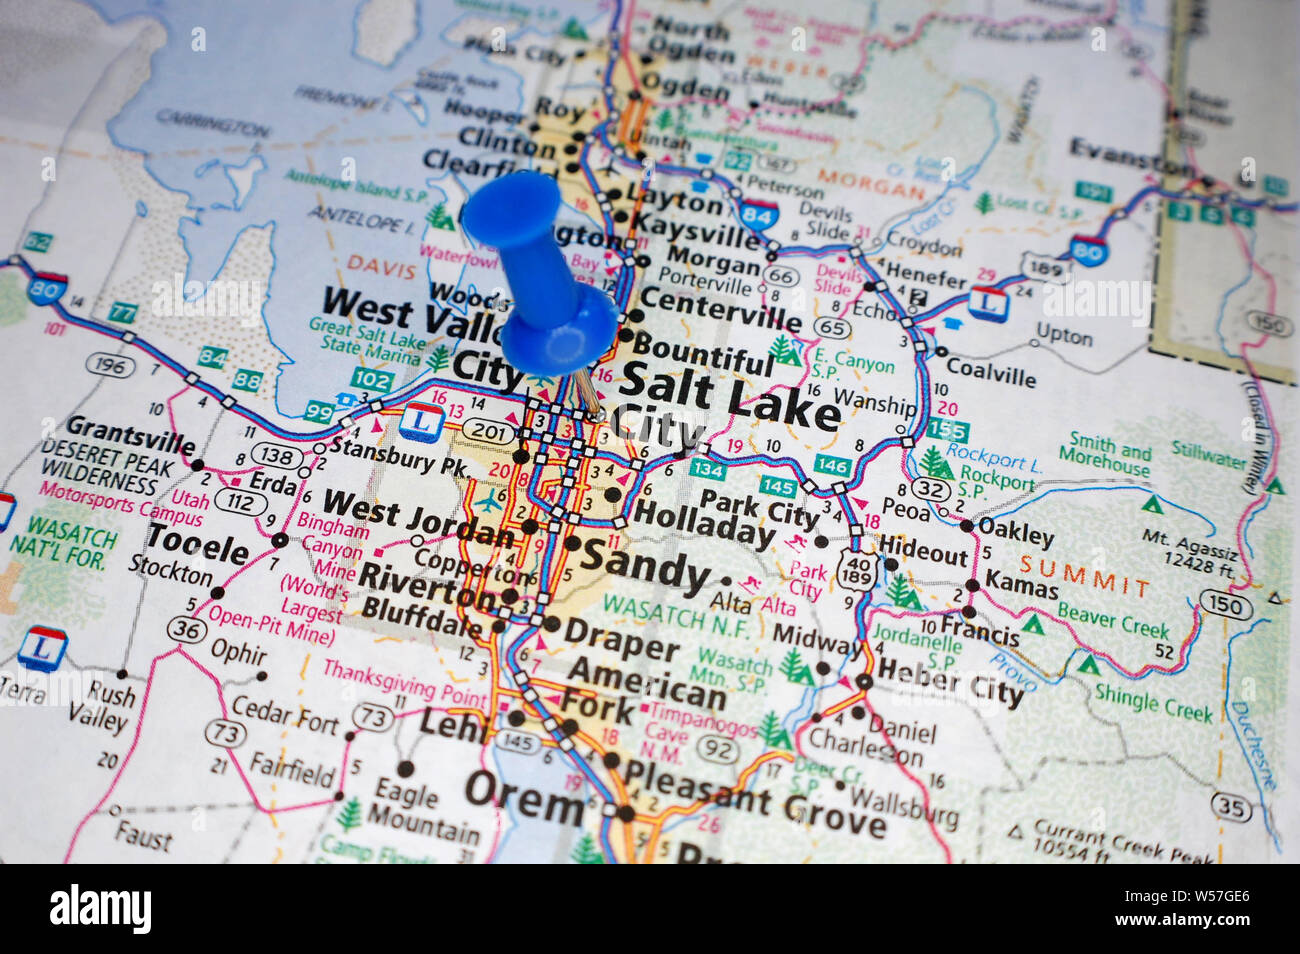 Salt Lake City Map Stock Photos Salt Lake City Map Stock Images